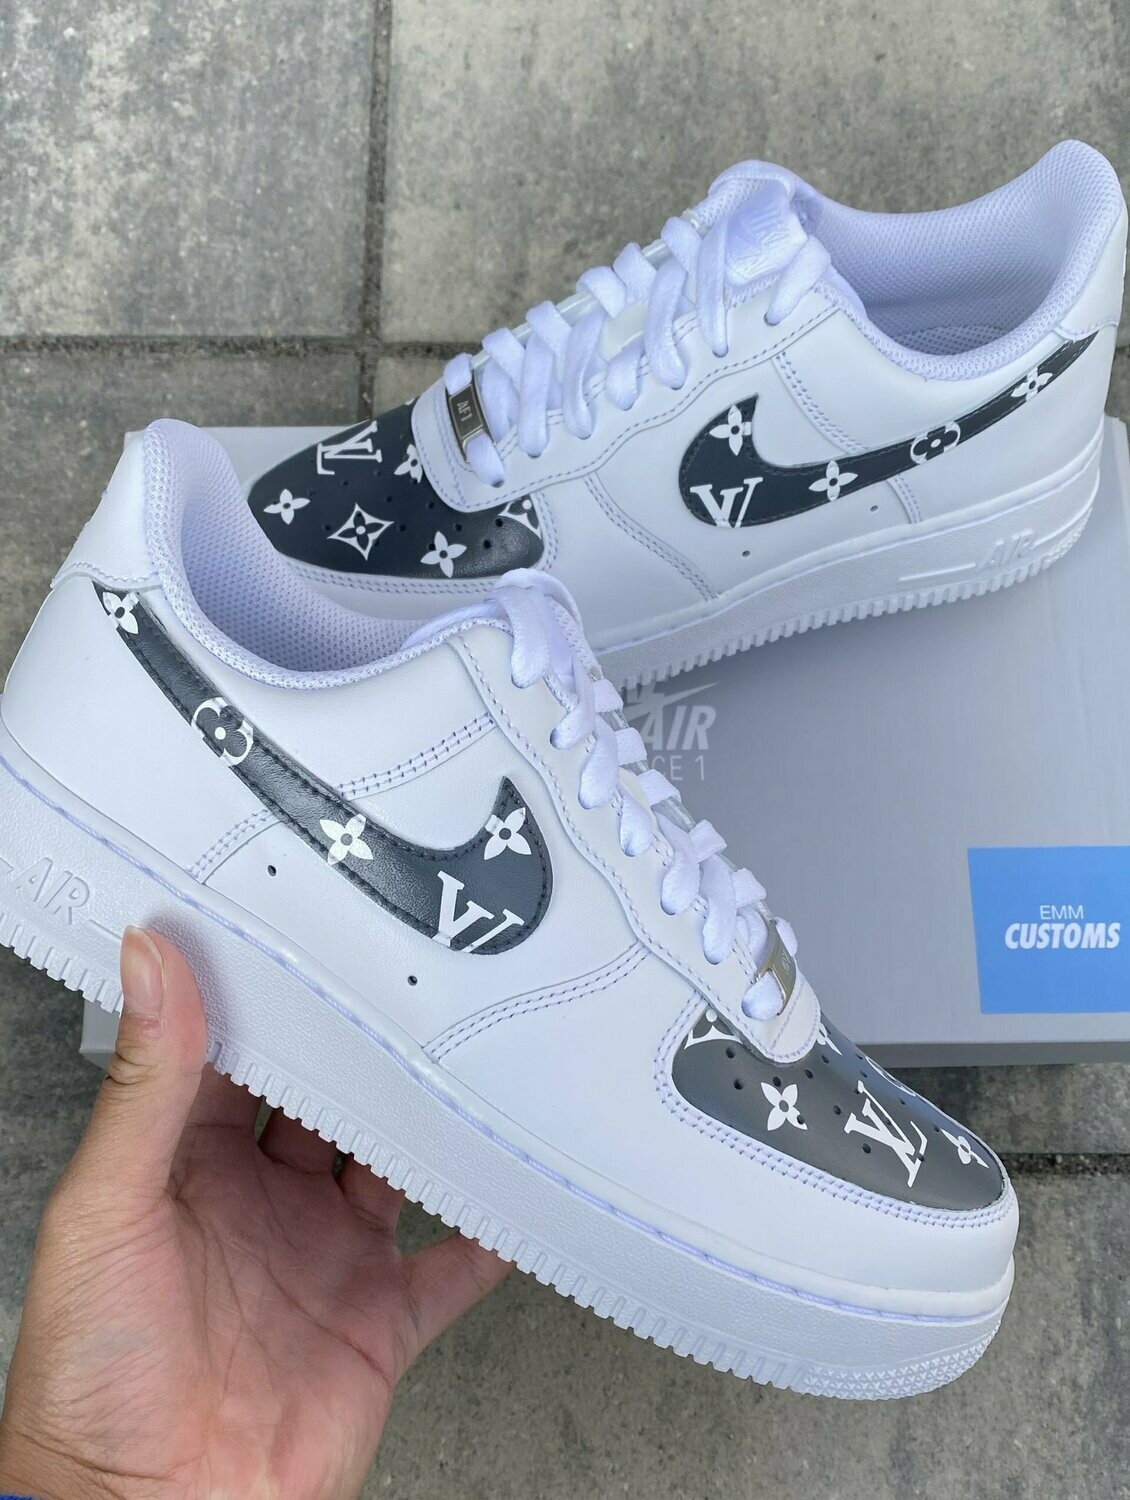 Nike Air Force 1 Customs Louis Vuitton 